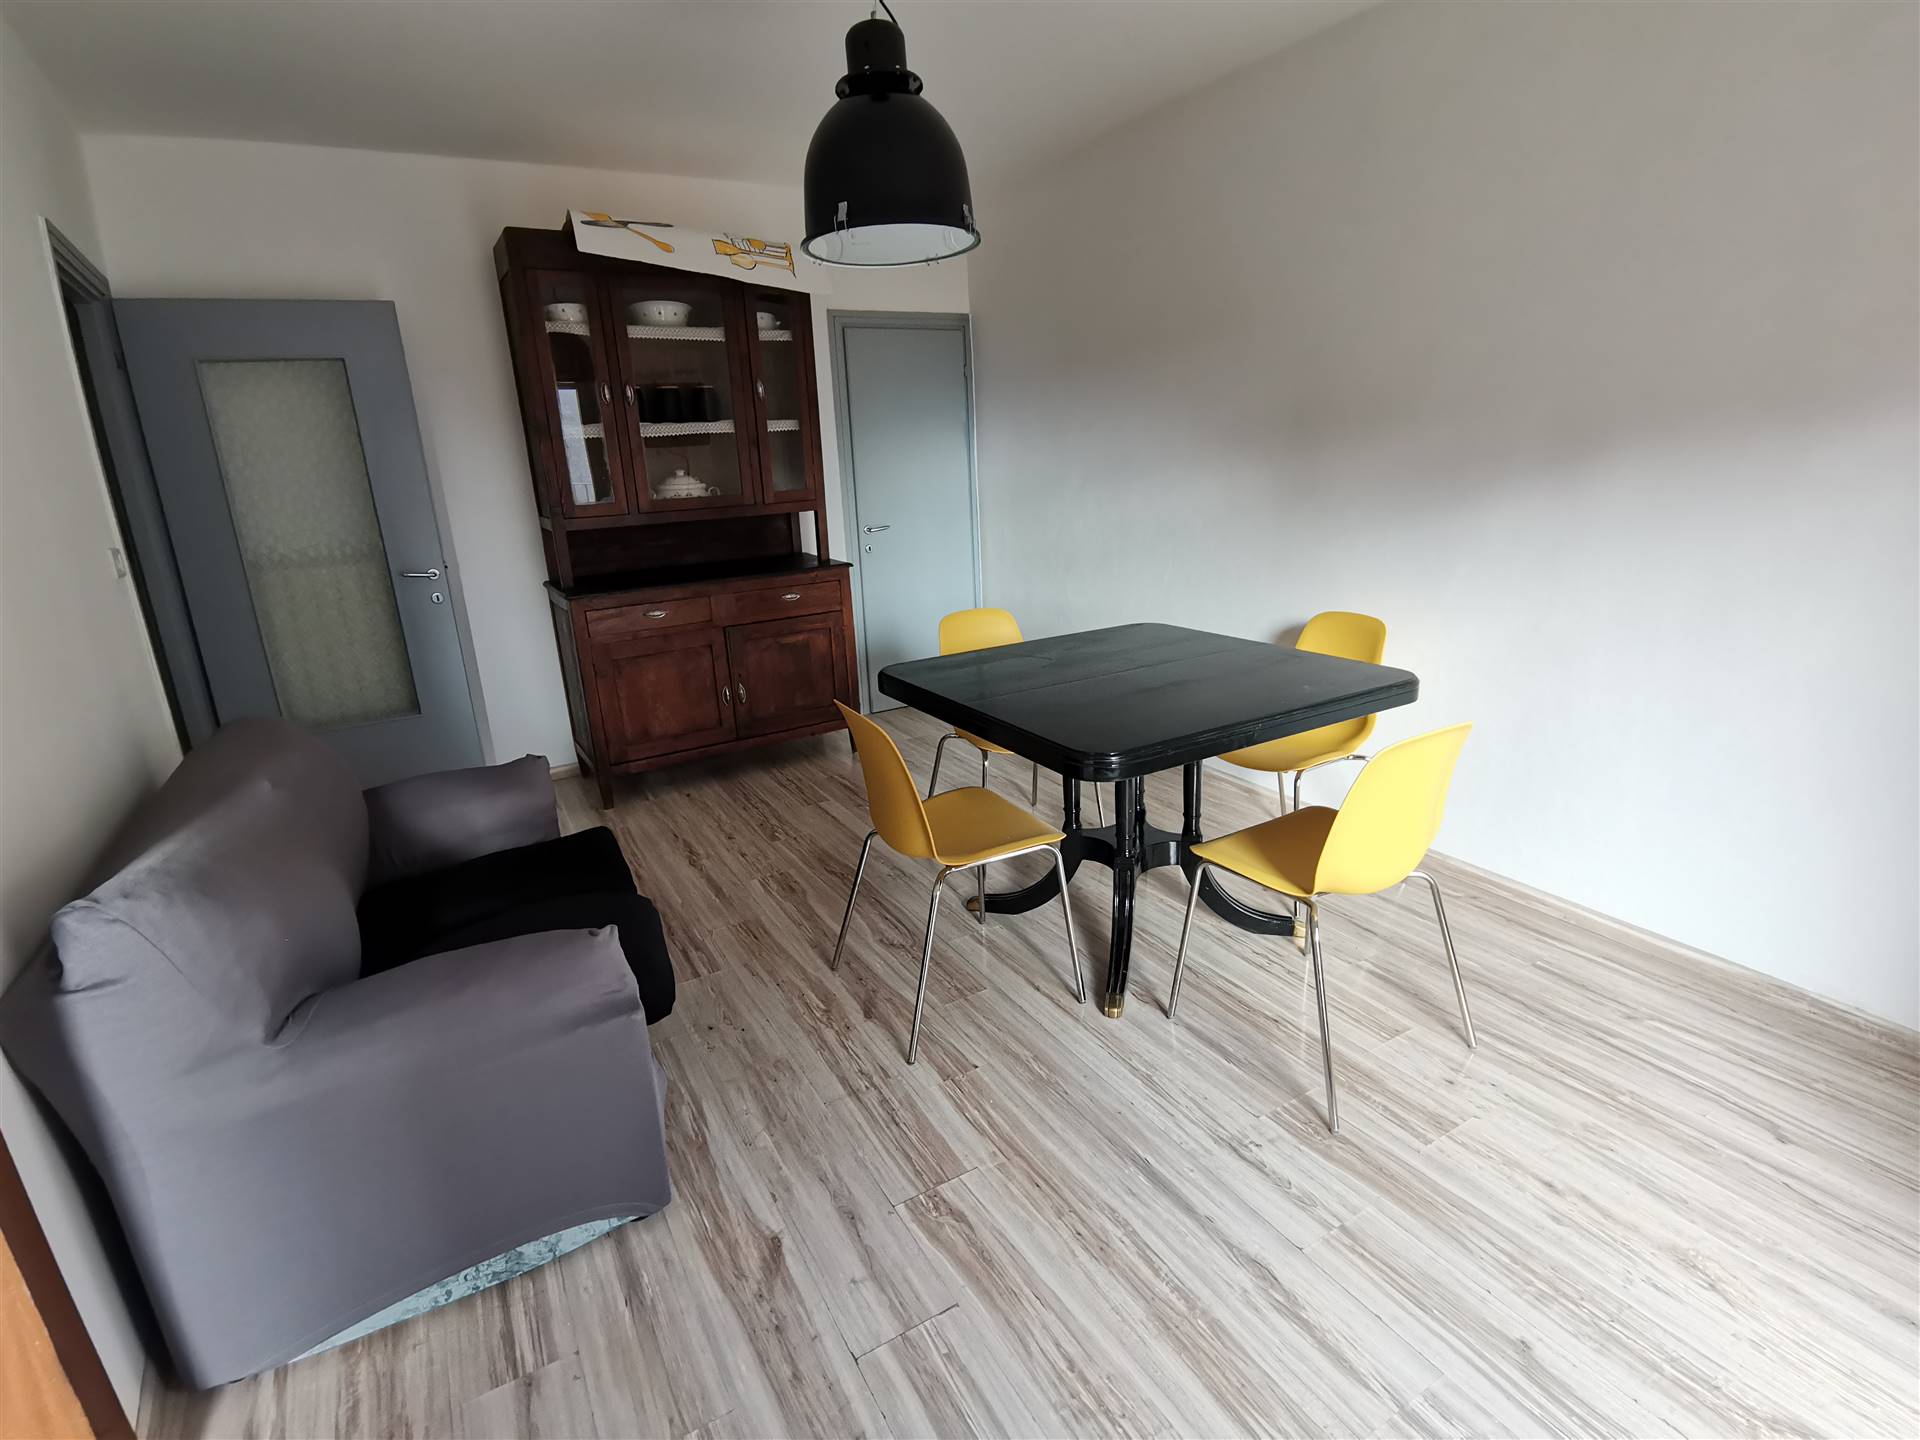 Appartamento in affitto a Tuscania, 4 locali, prezzo € 400 | CambioCasa.it